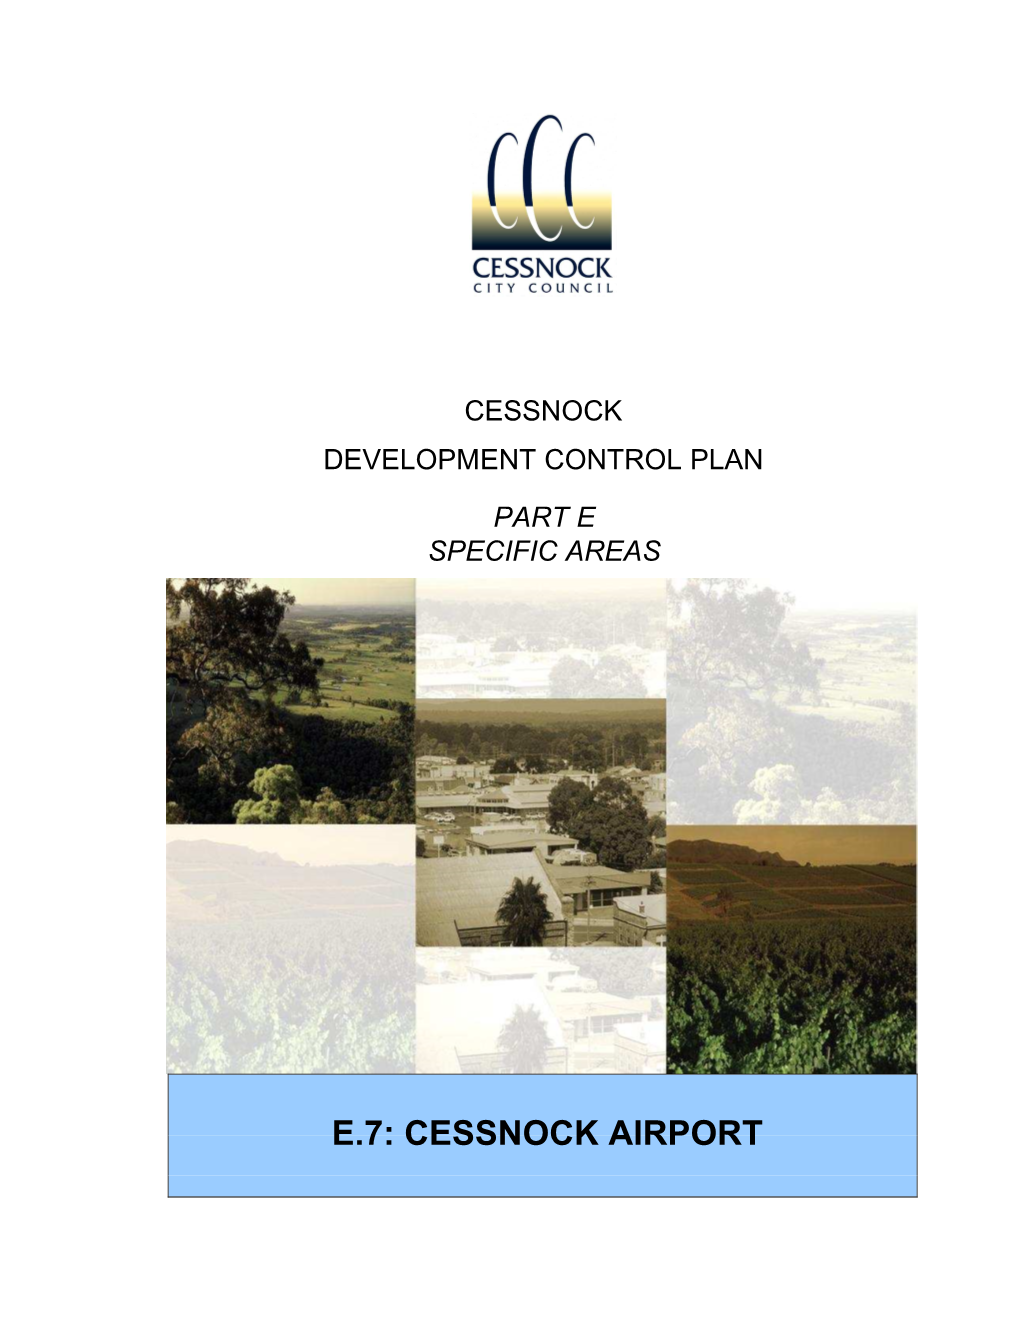 Part E Chapter 7 Cessnock Airport